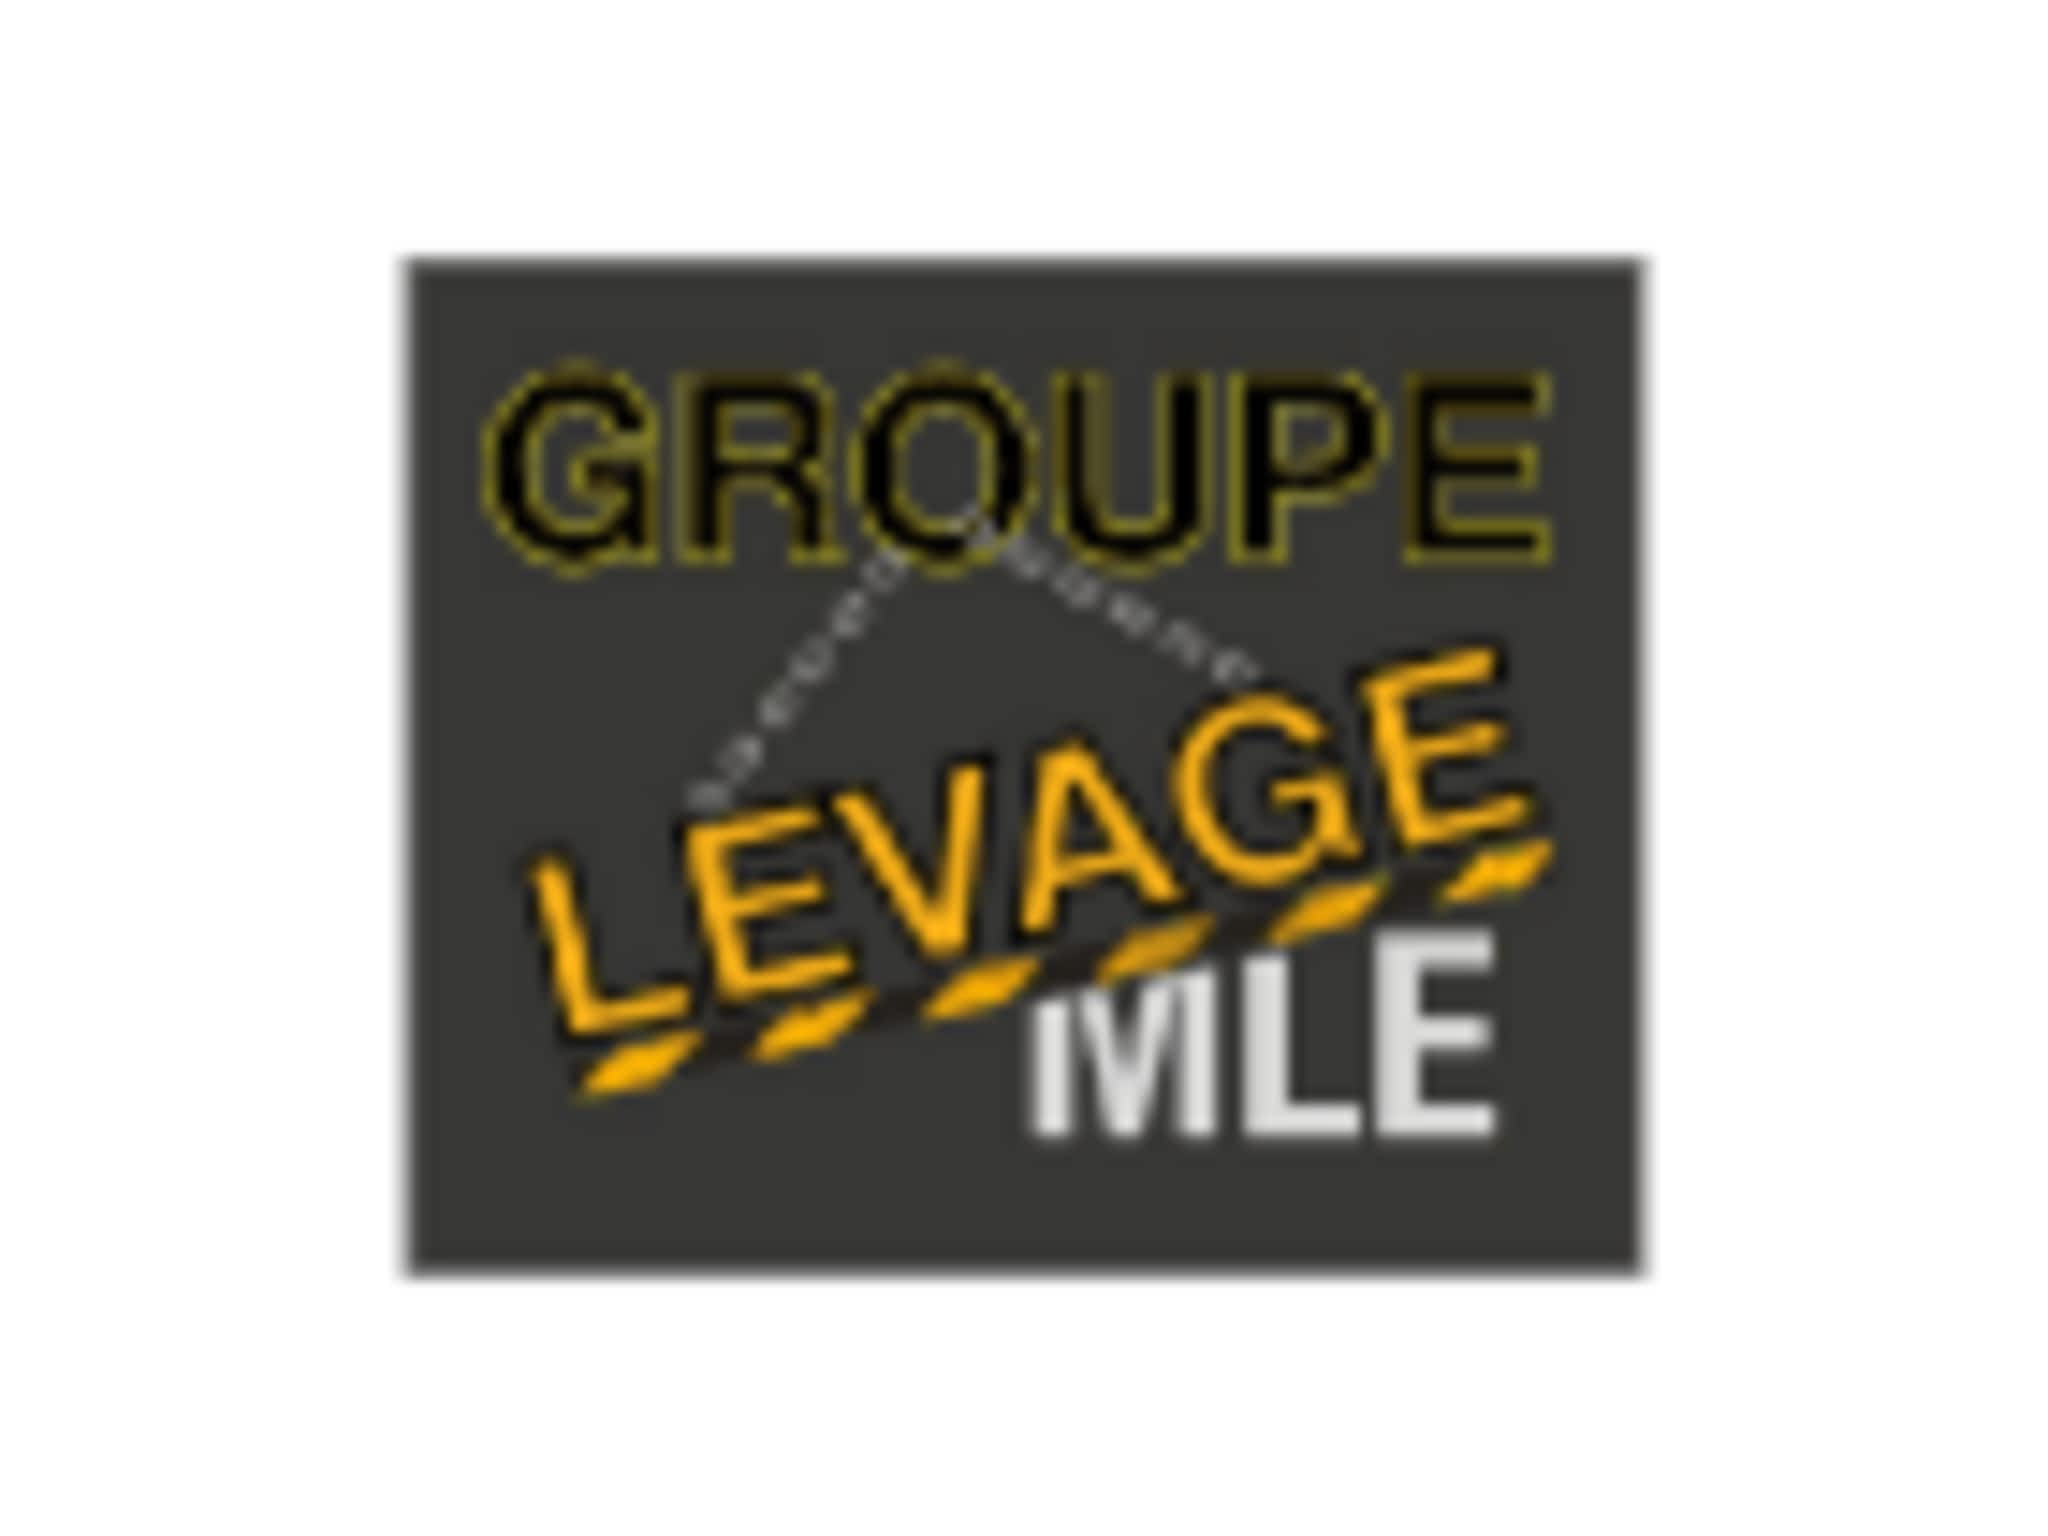 photo Groupe Levage MLE Inc